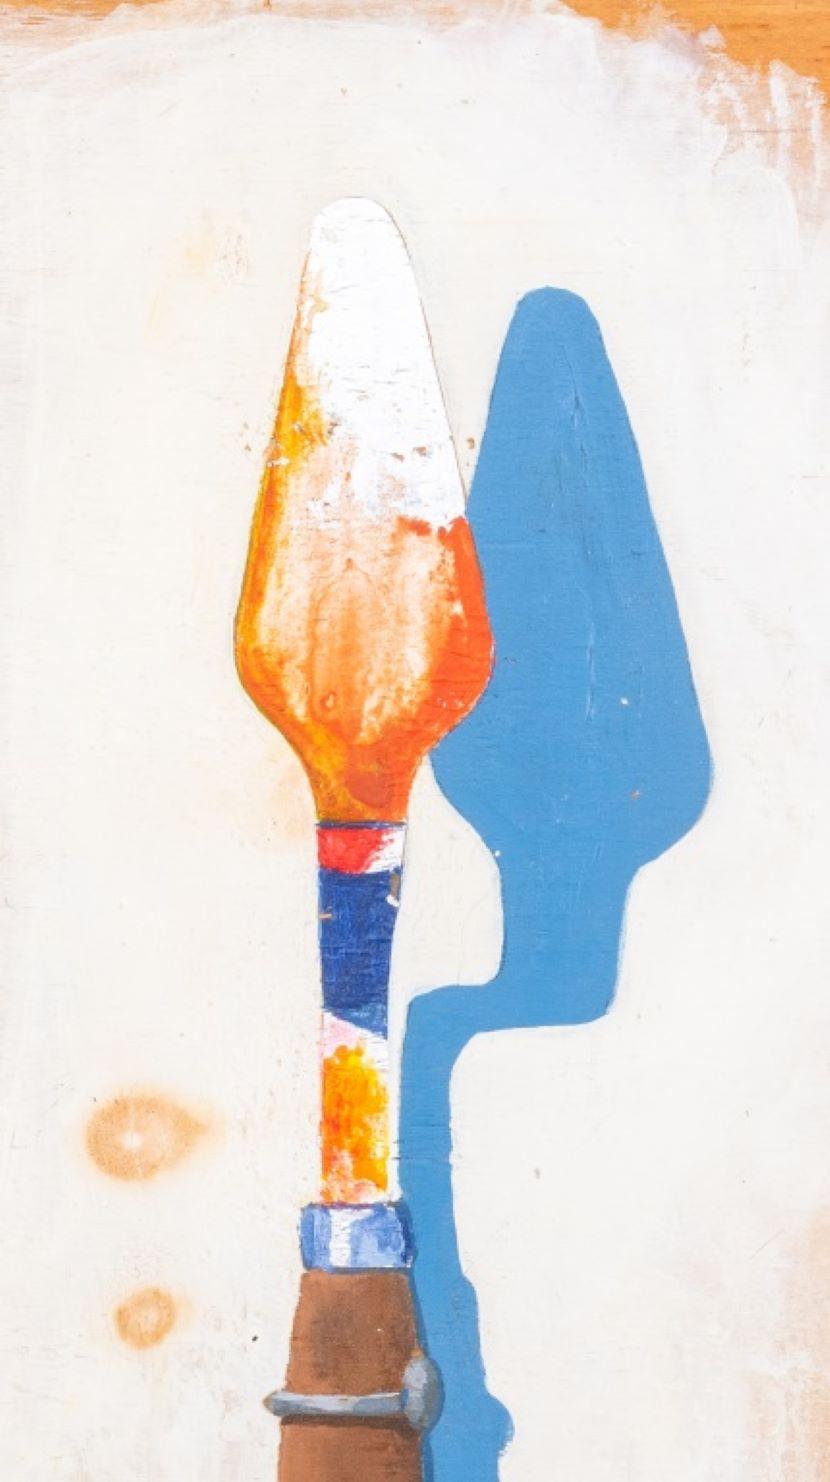 Domenick Capobianco (Américain, né en 1928) Peinture acrylique surréaliste sur panneau de bois, représentant un couteau à palette, à la manière de René Magritte (Belge, 1898-1967), apparemment non signée, cachet 